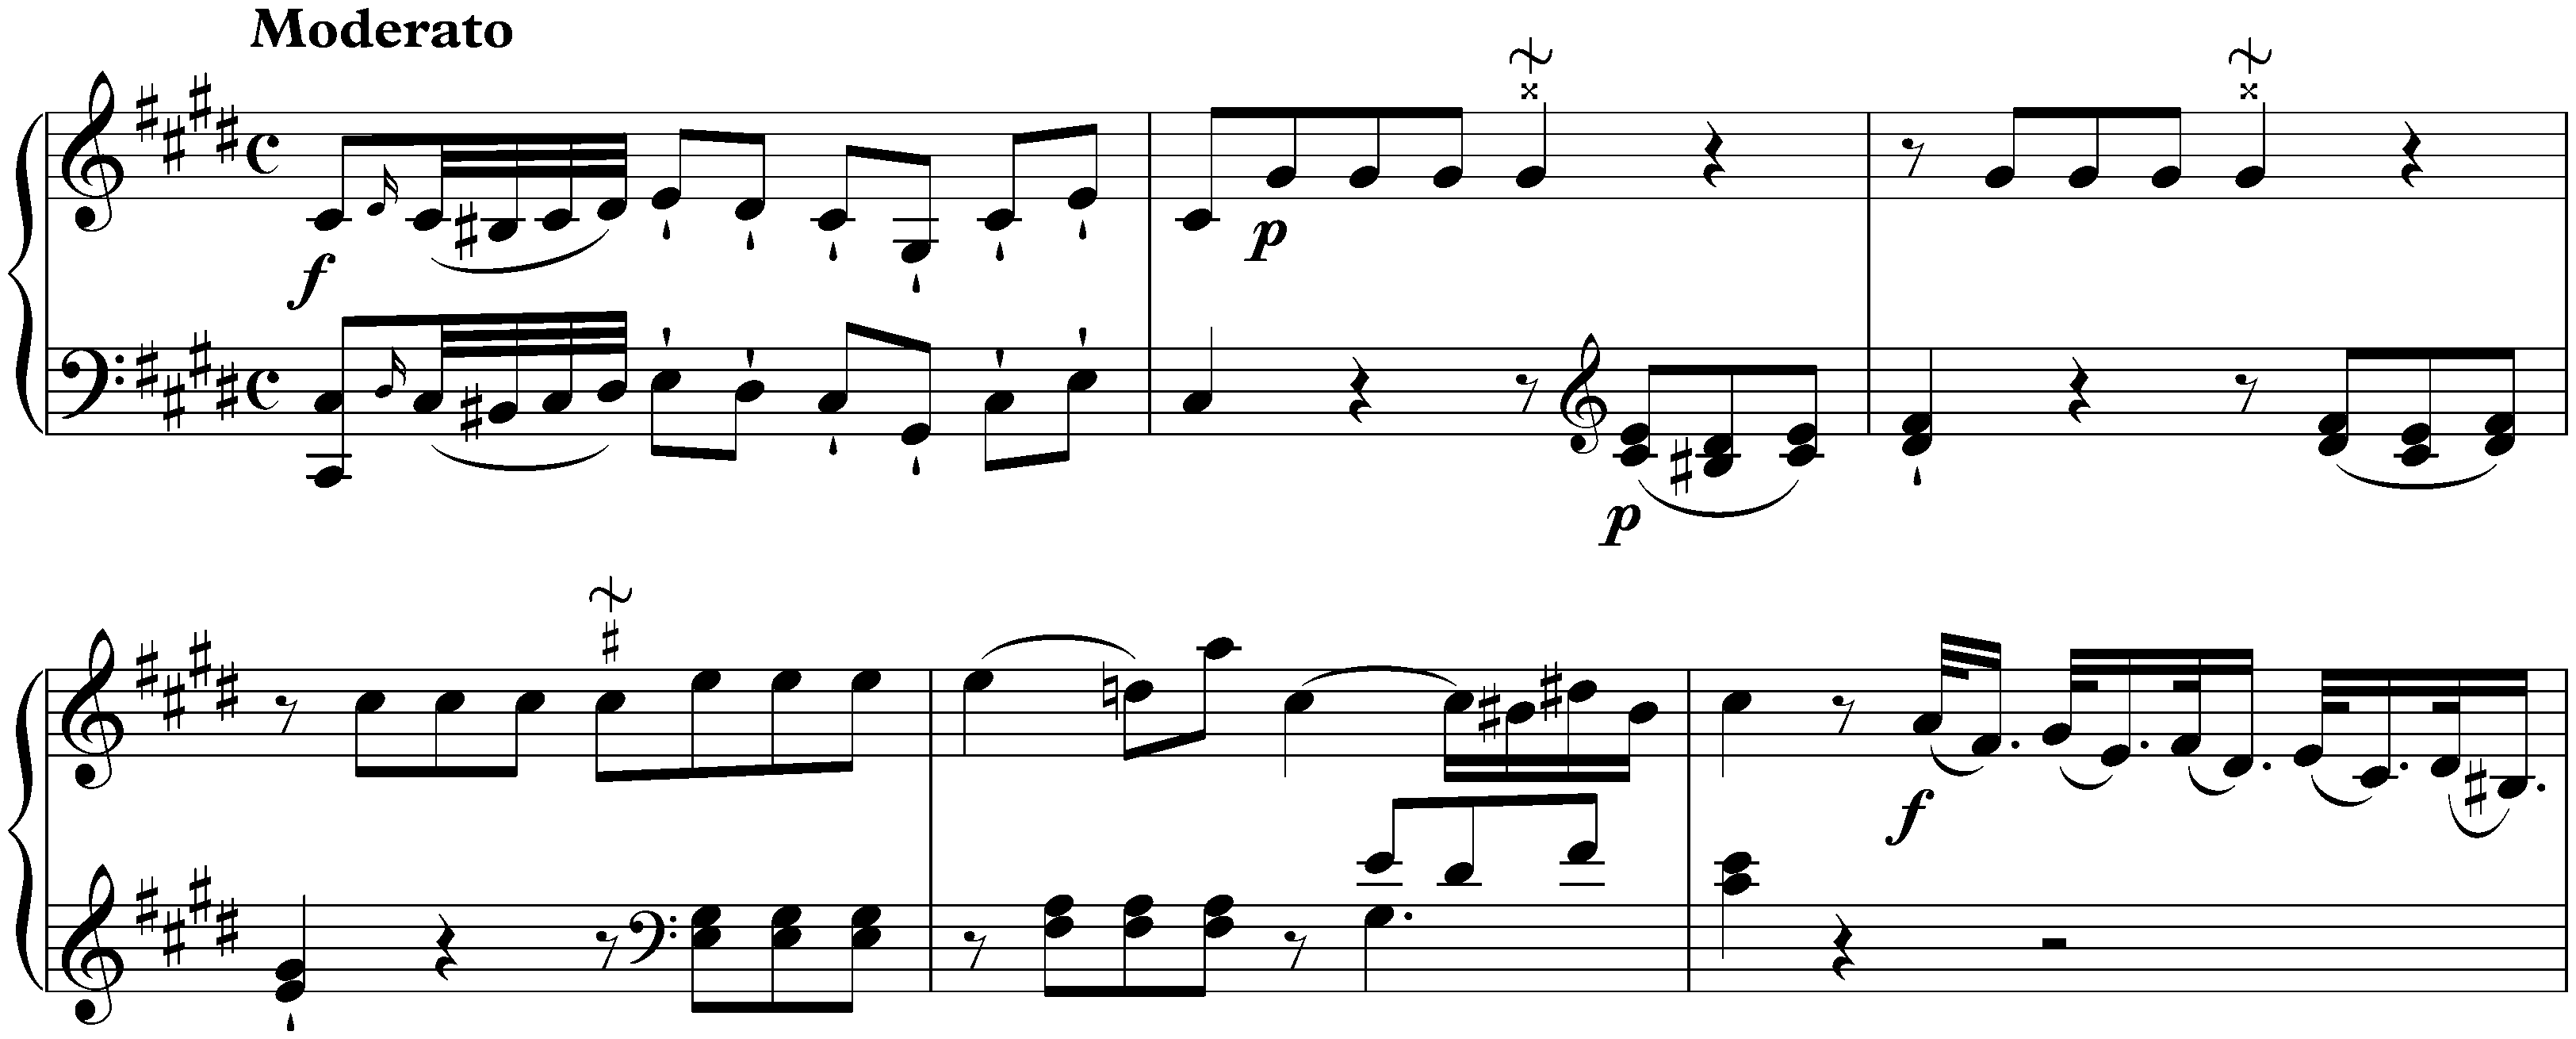 Sonata in C-sharp minor, Hob. XVI:36; 1. Moderato